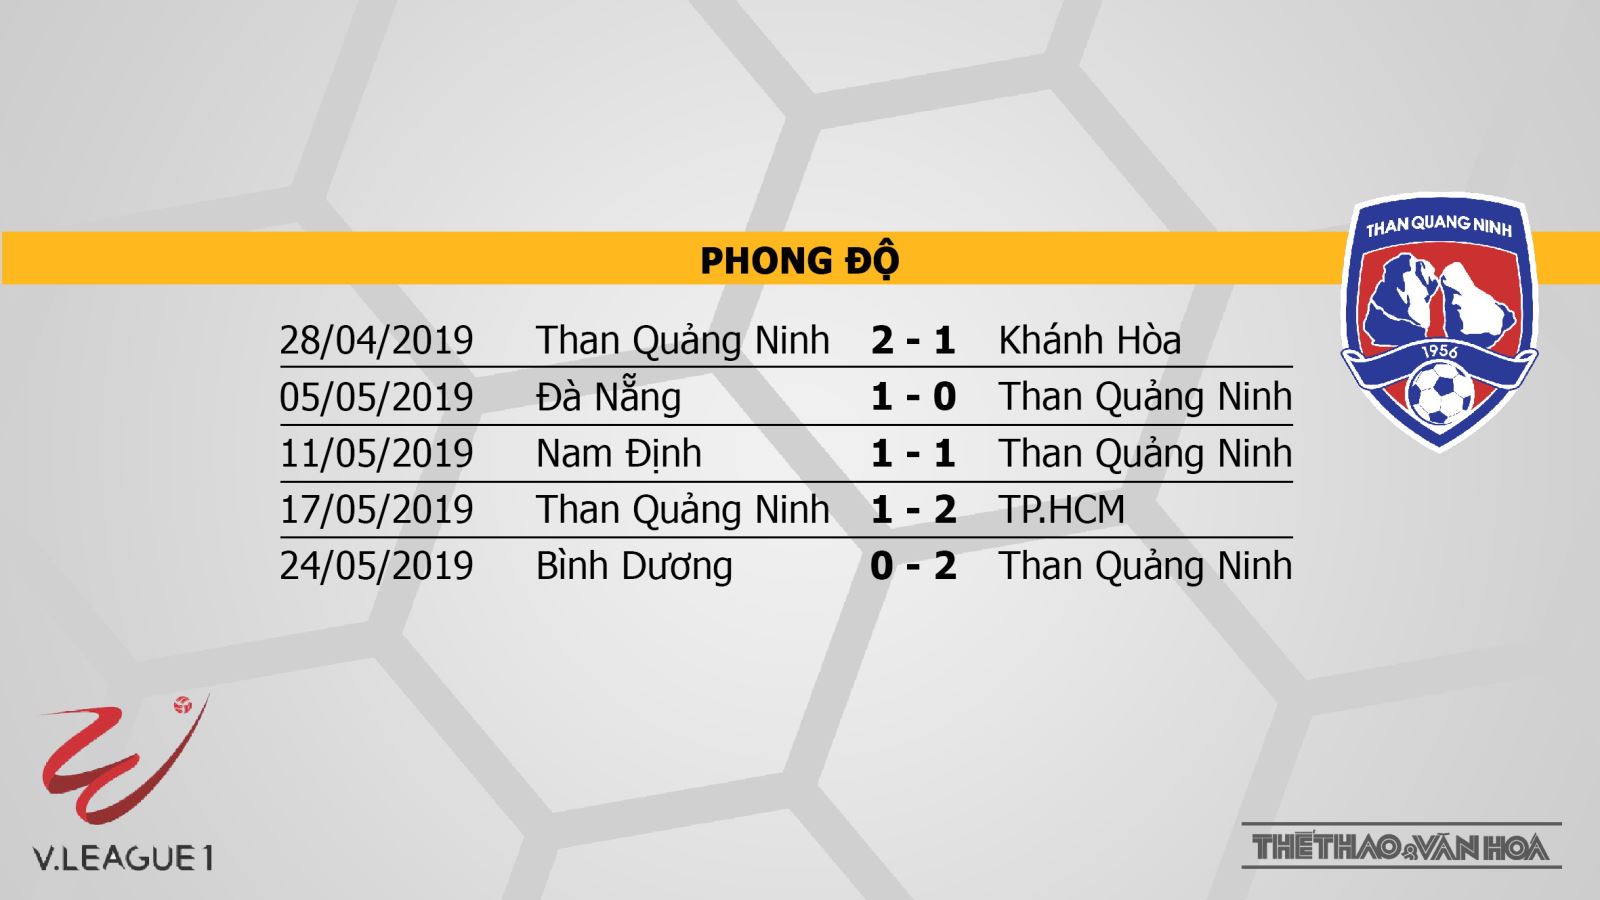 viettel vs than quảng ninh, Viettel, Than Quảng Ninh, trực tiếp Viettel vs Than Quảng Ninh, trực tiếp bóng đá, V-League 2019, VTV6, BĐTV, TTTV, FPT Play, HTV Thể thao